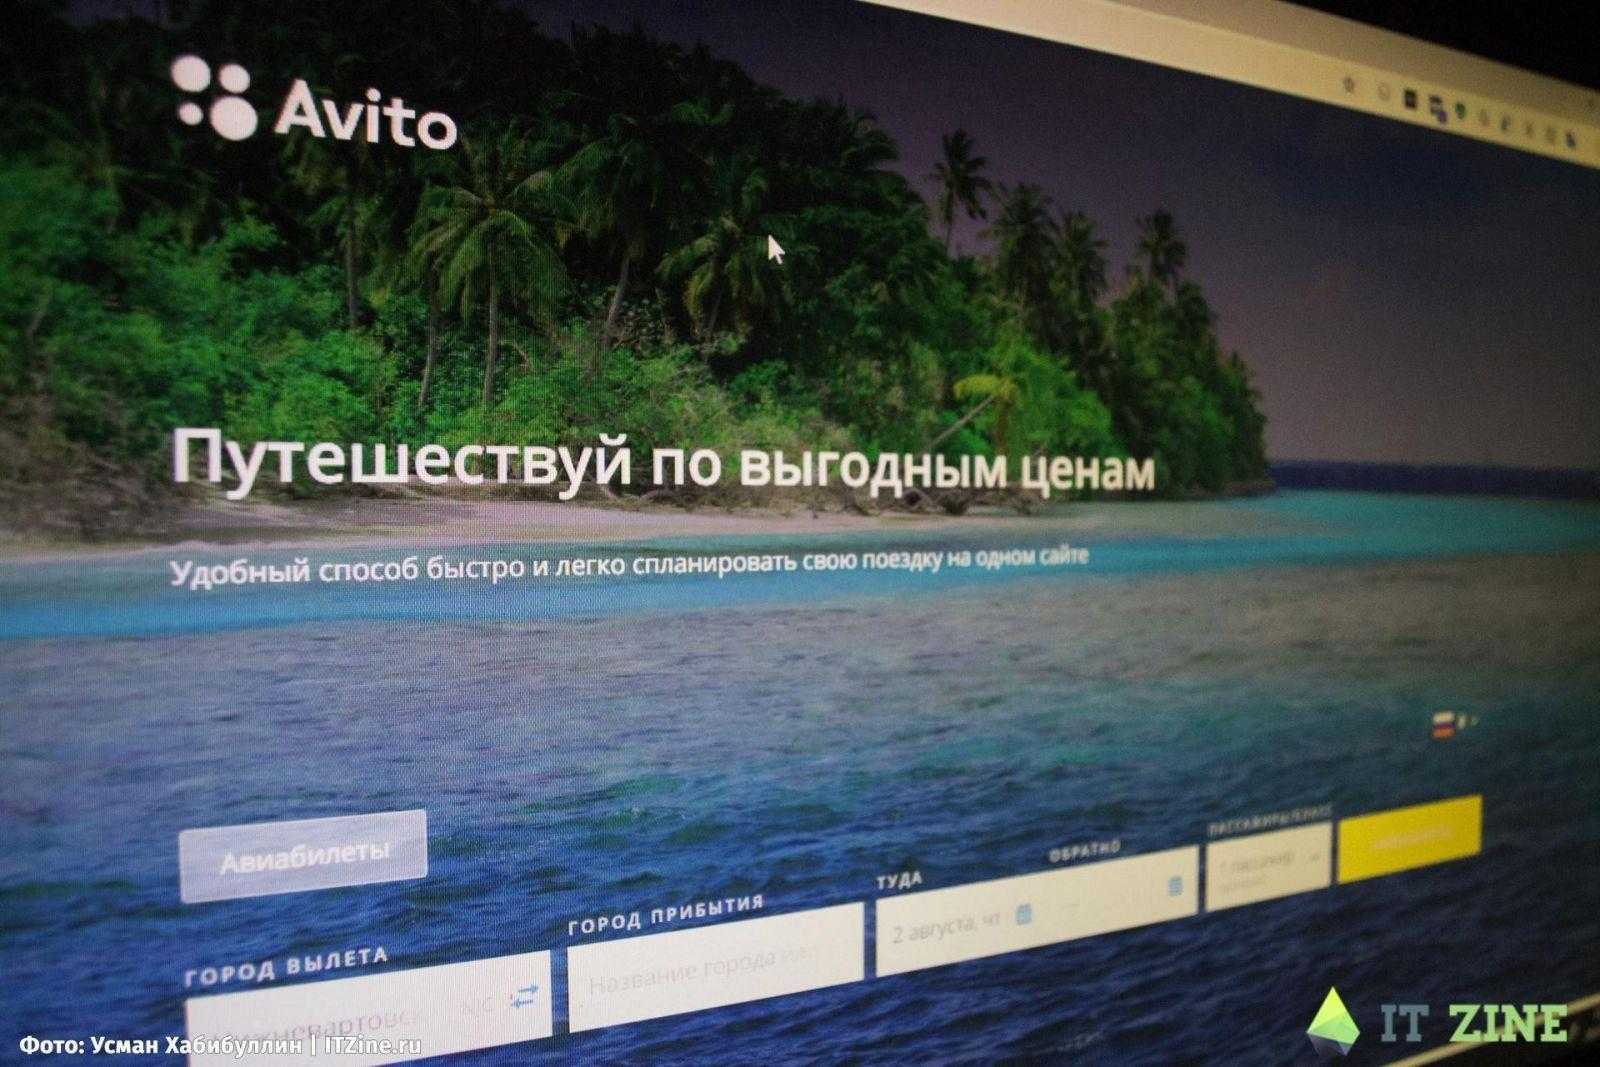 Avito запустил сервис поиска авиабилетов (avito)